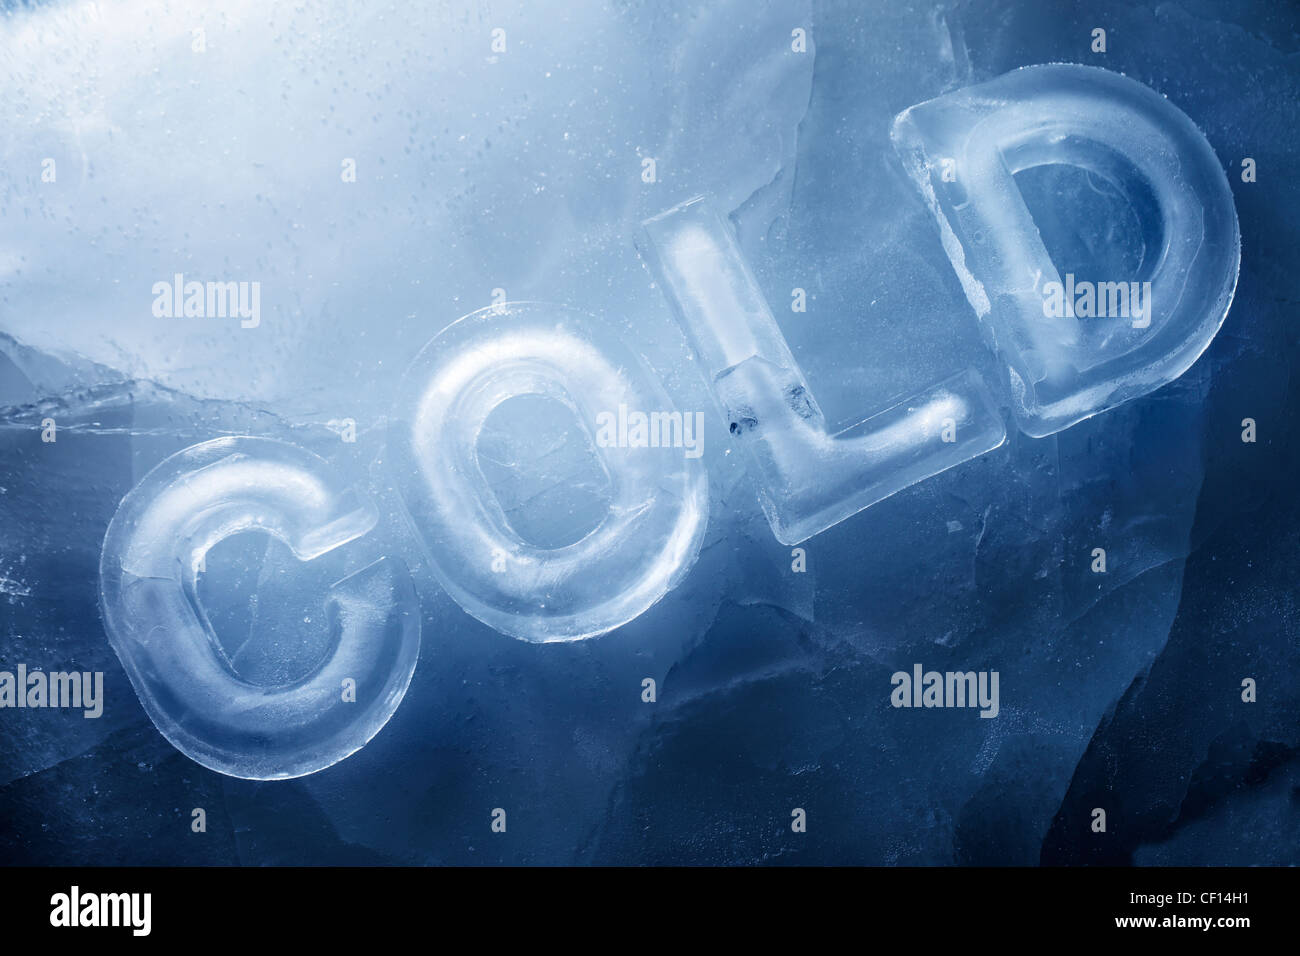 Wort "Kalt" mit echtem Eisbuchstaben auf dem Eis gemacht. Stockfoto